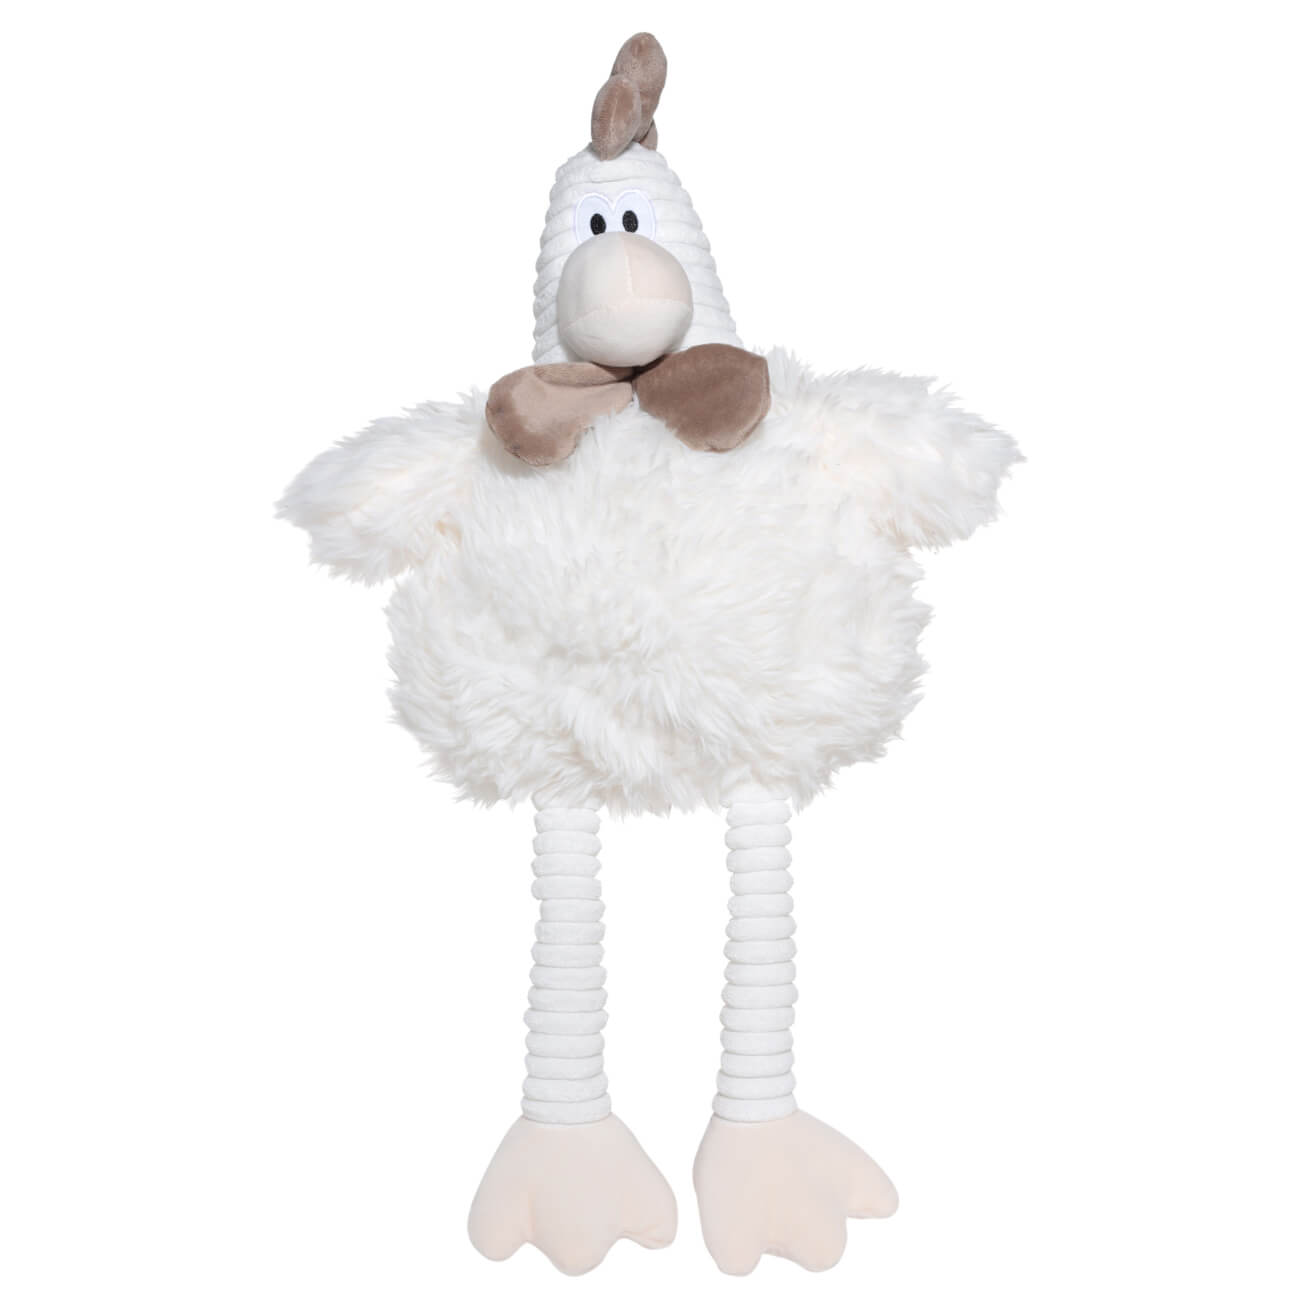 Игрушка, 55 см, мягкая, полиэстер, молочная, Петух, Rooster игрушка 80 см мягкая полиэстер молочная гусь goose